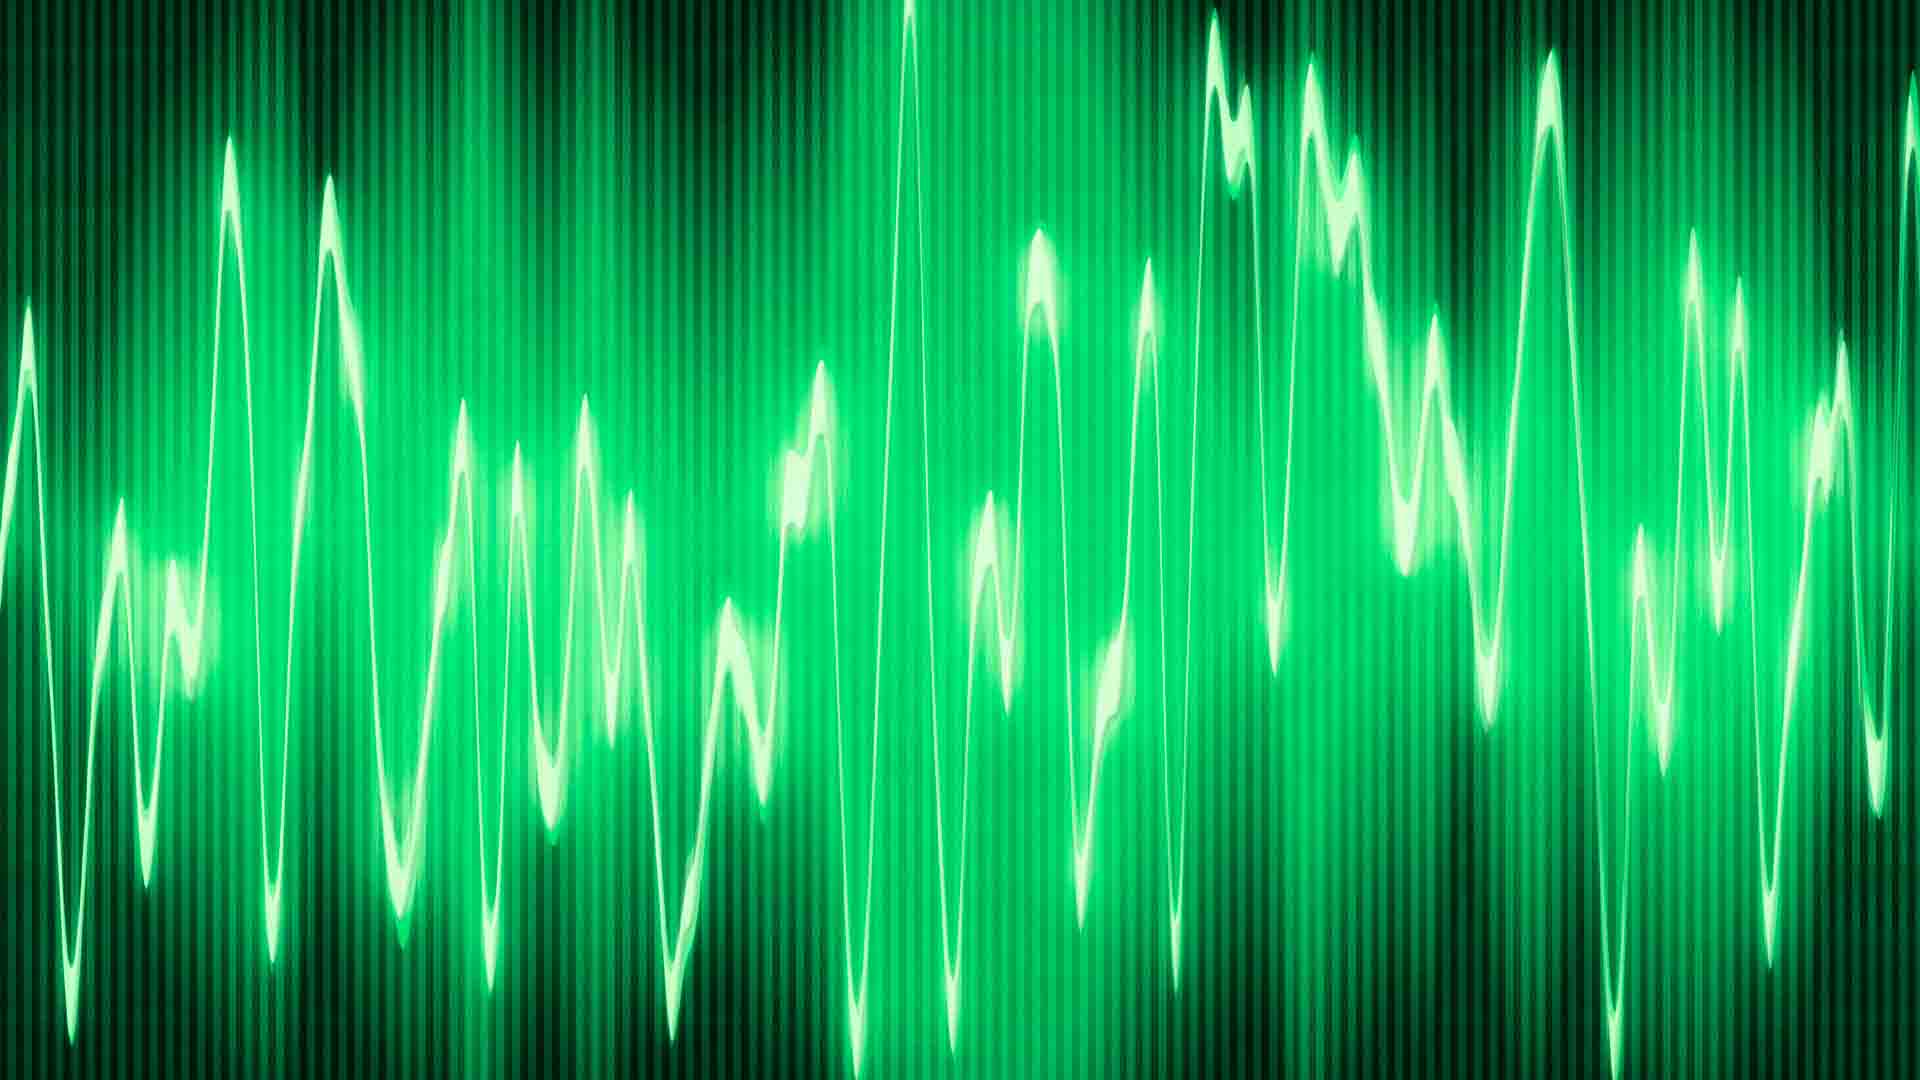 Green sound waves